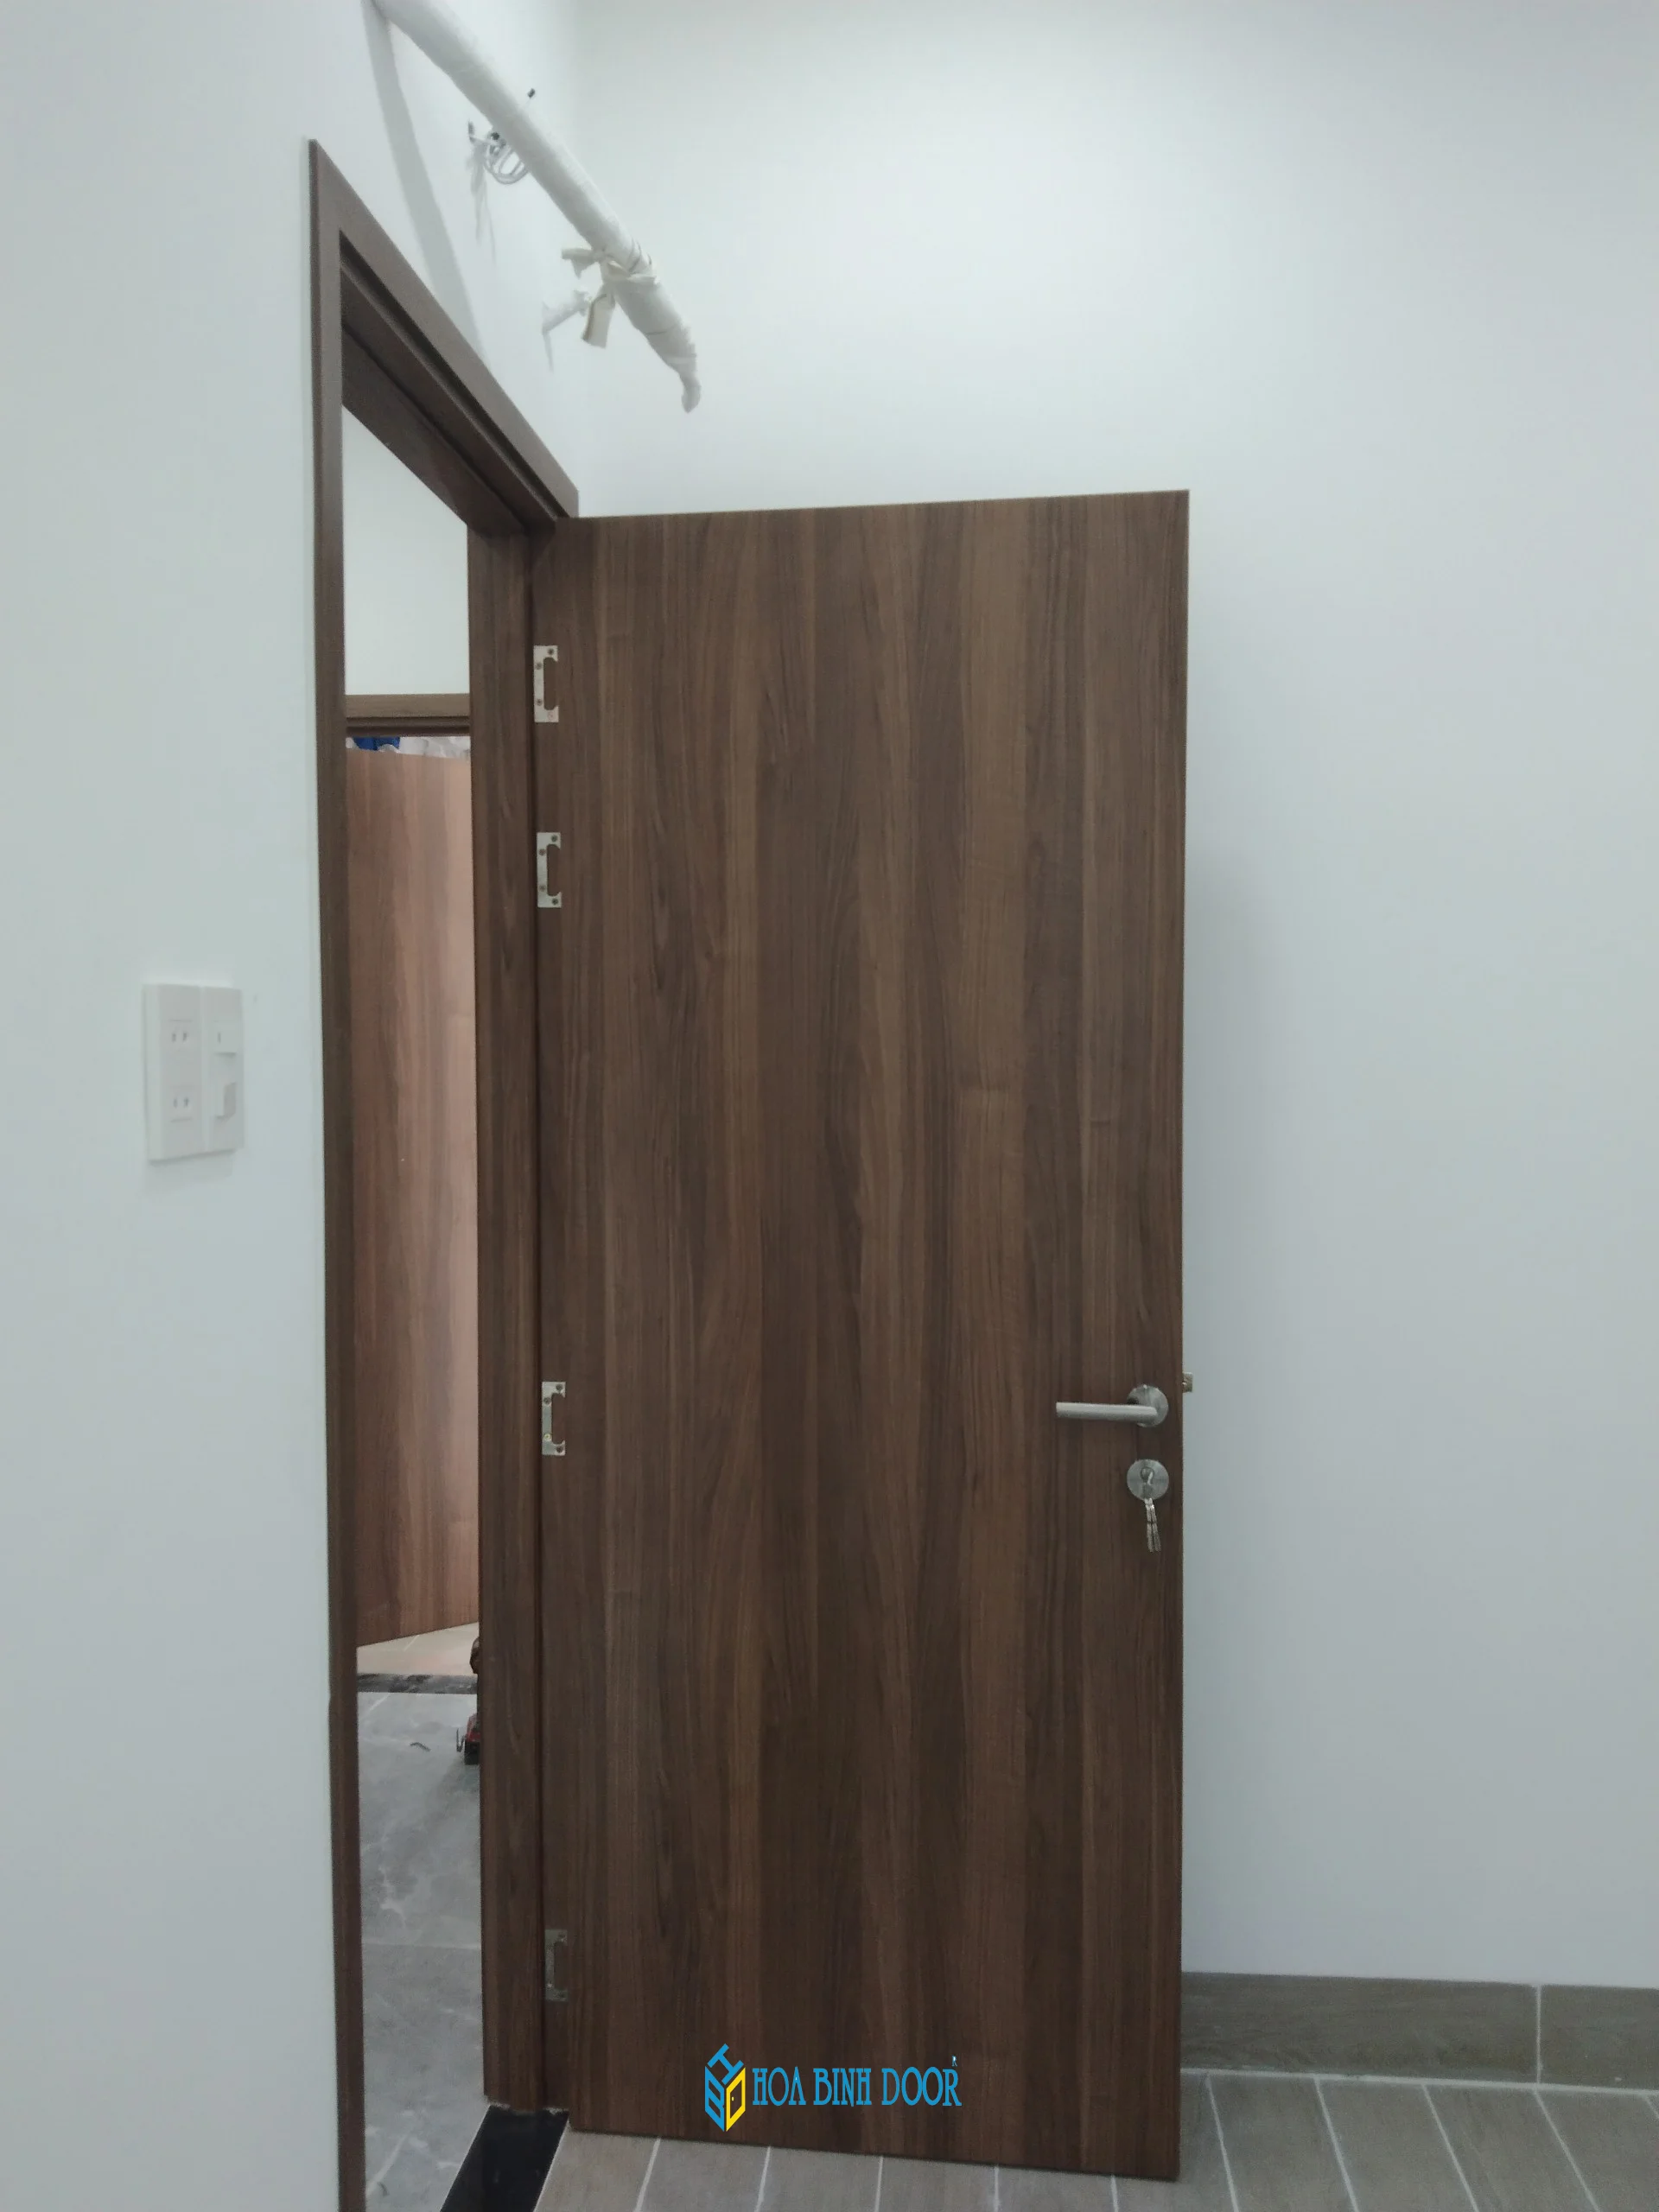 Nội, ngoại thất: Giá cửa gỗ công nghiệp phòng ngủ tại Lâm Đồng Z4832236470644_edc9242655b0b4f05b6047f967899eba